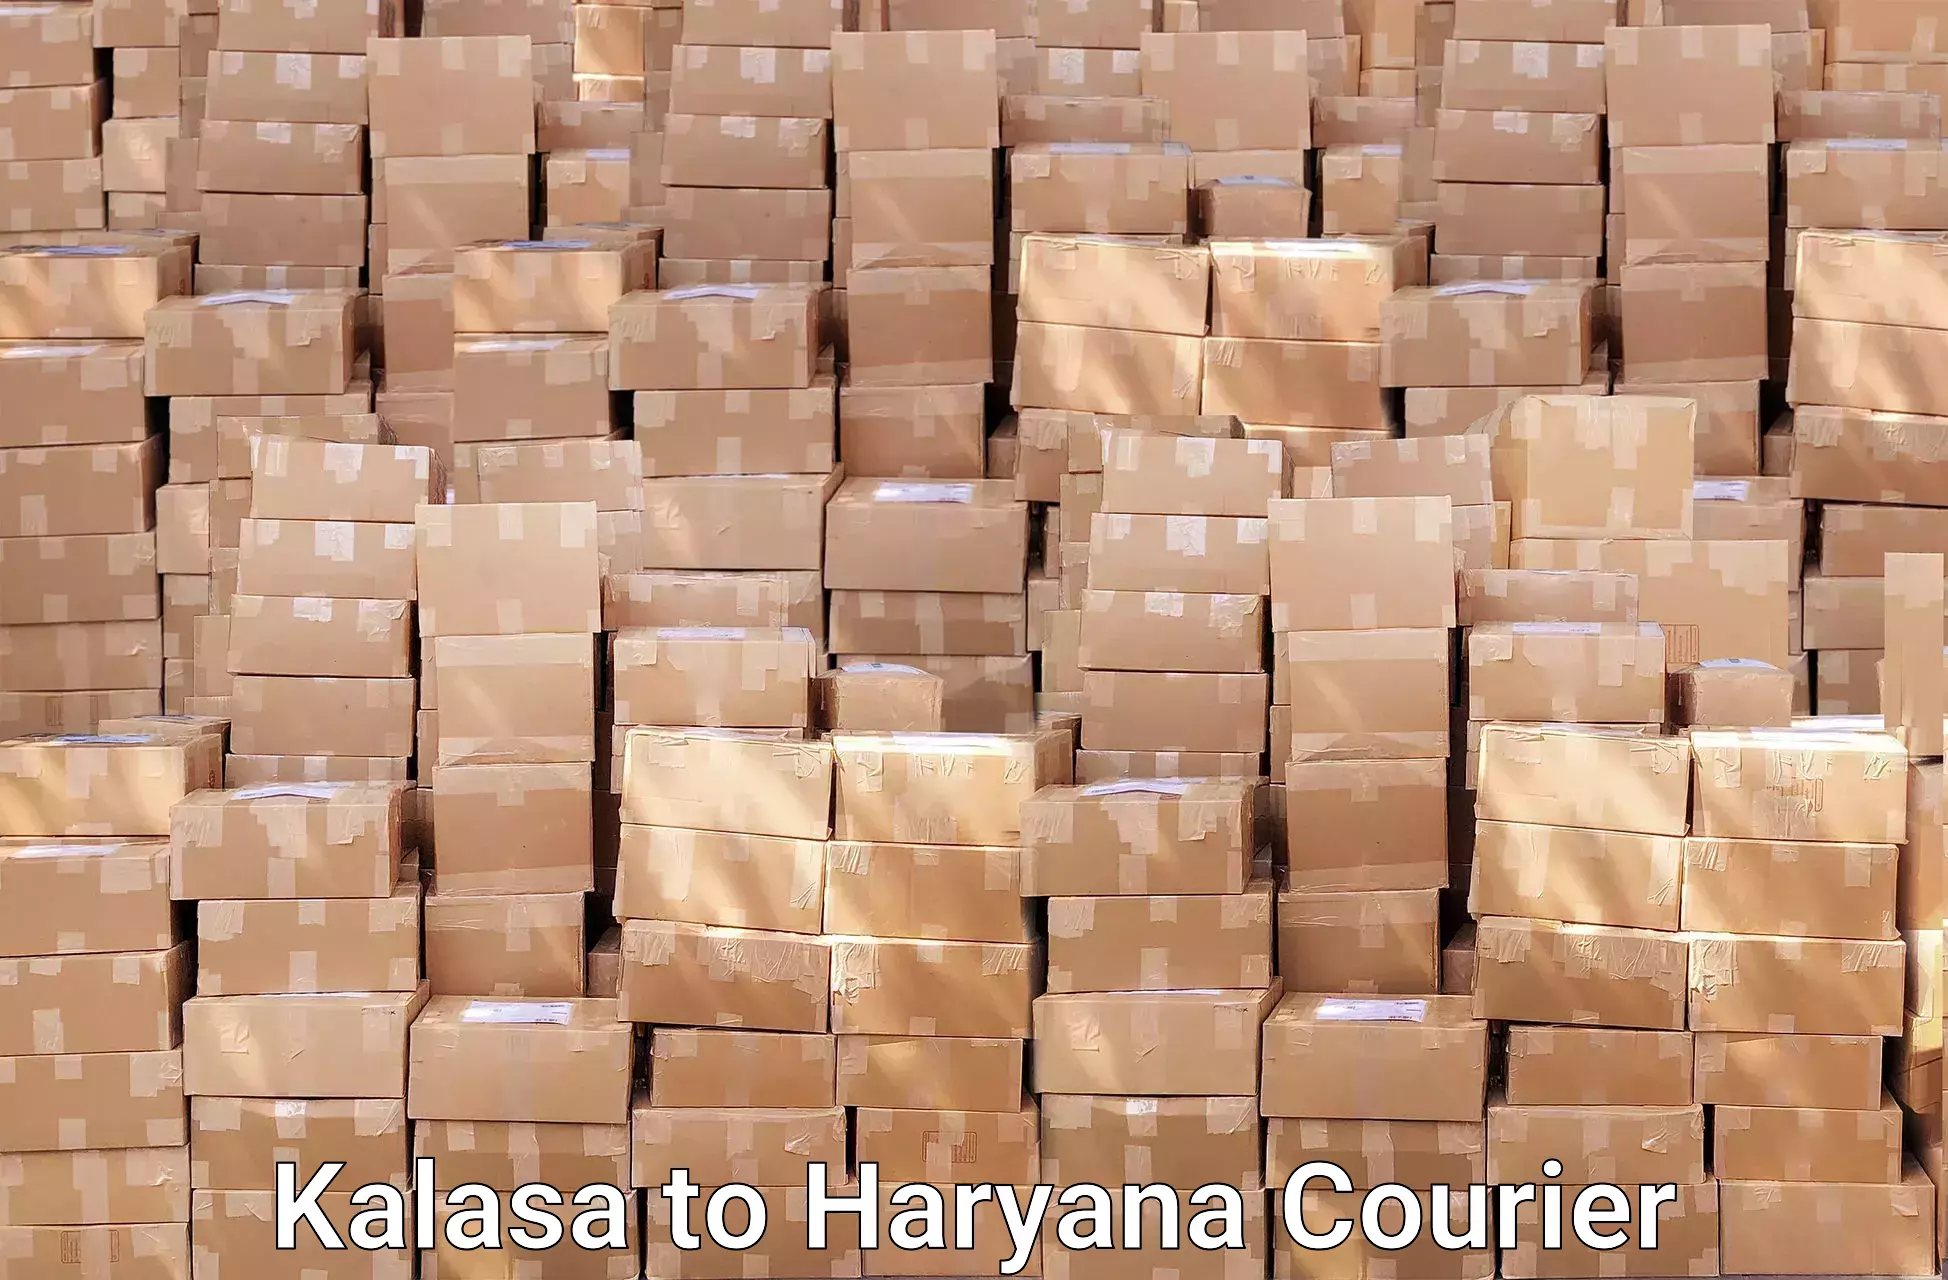 Moving and packing experts in Kalasa to Budha Khera